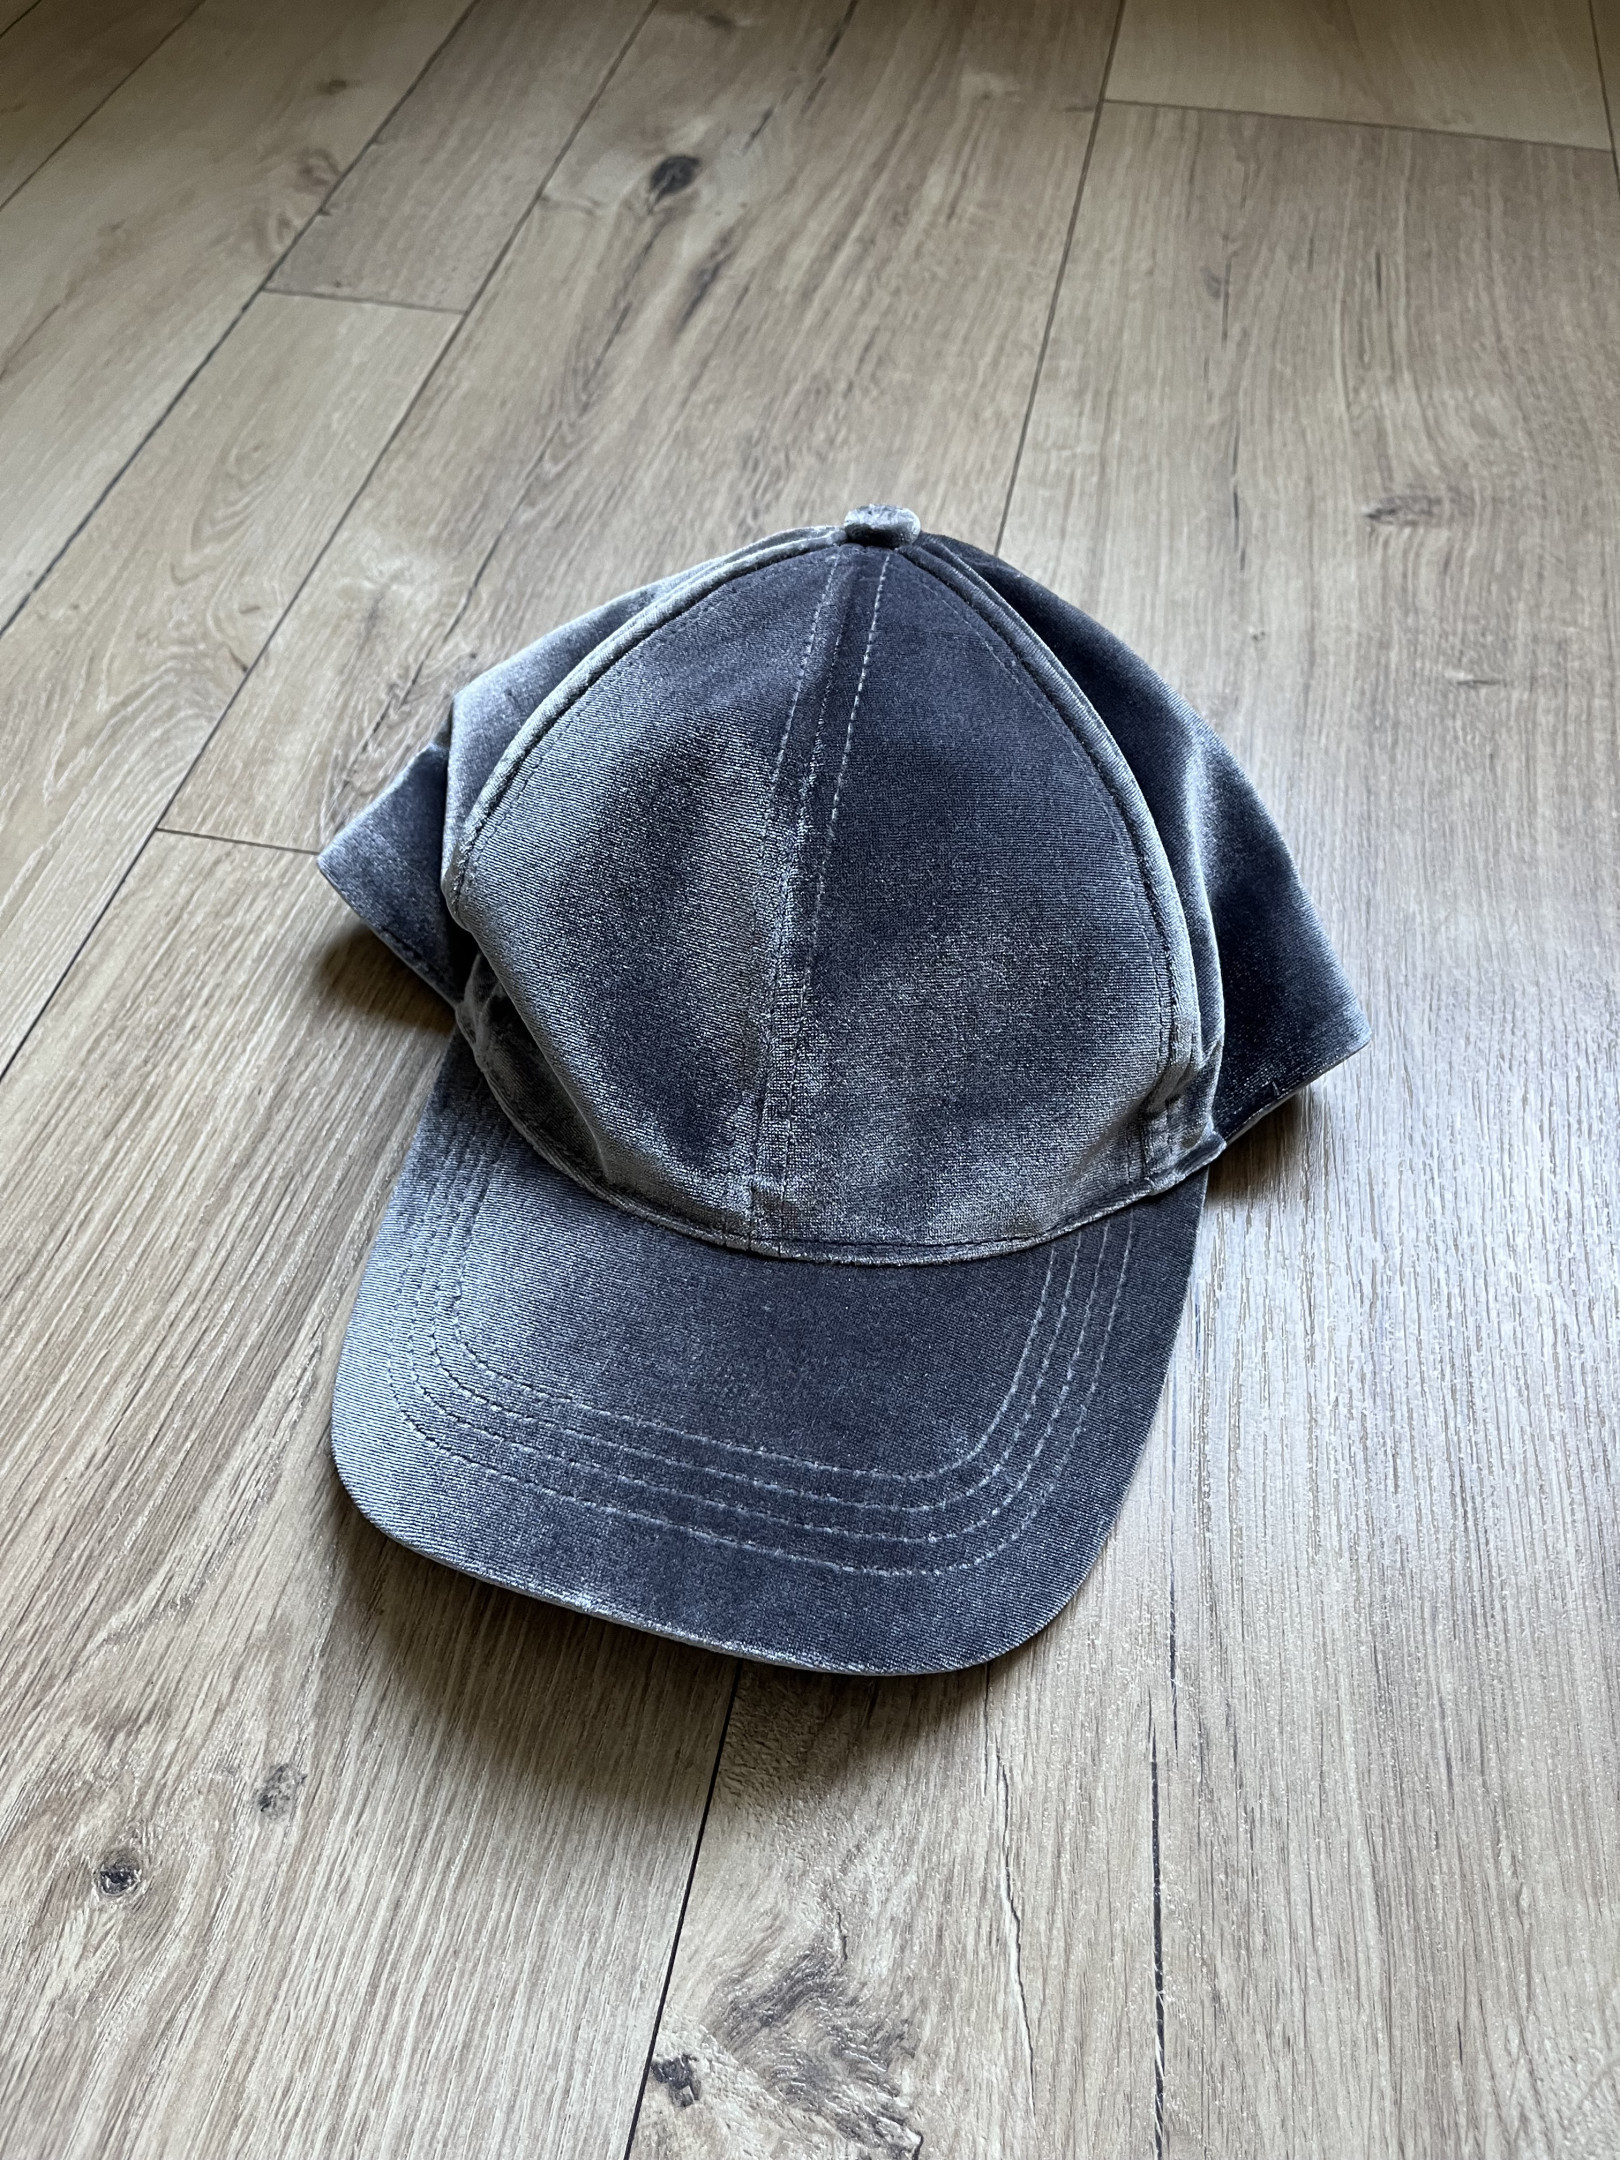 Mütze aus grauem Samt